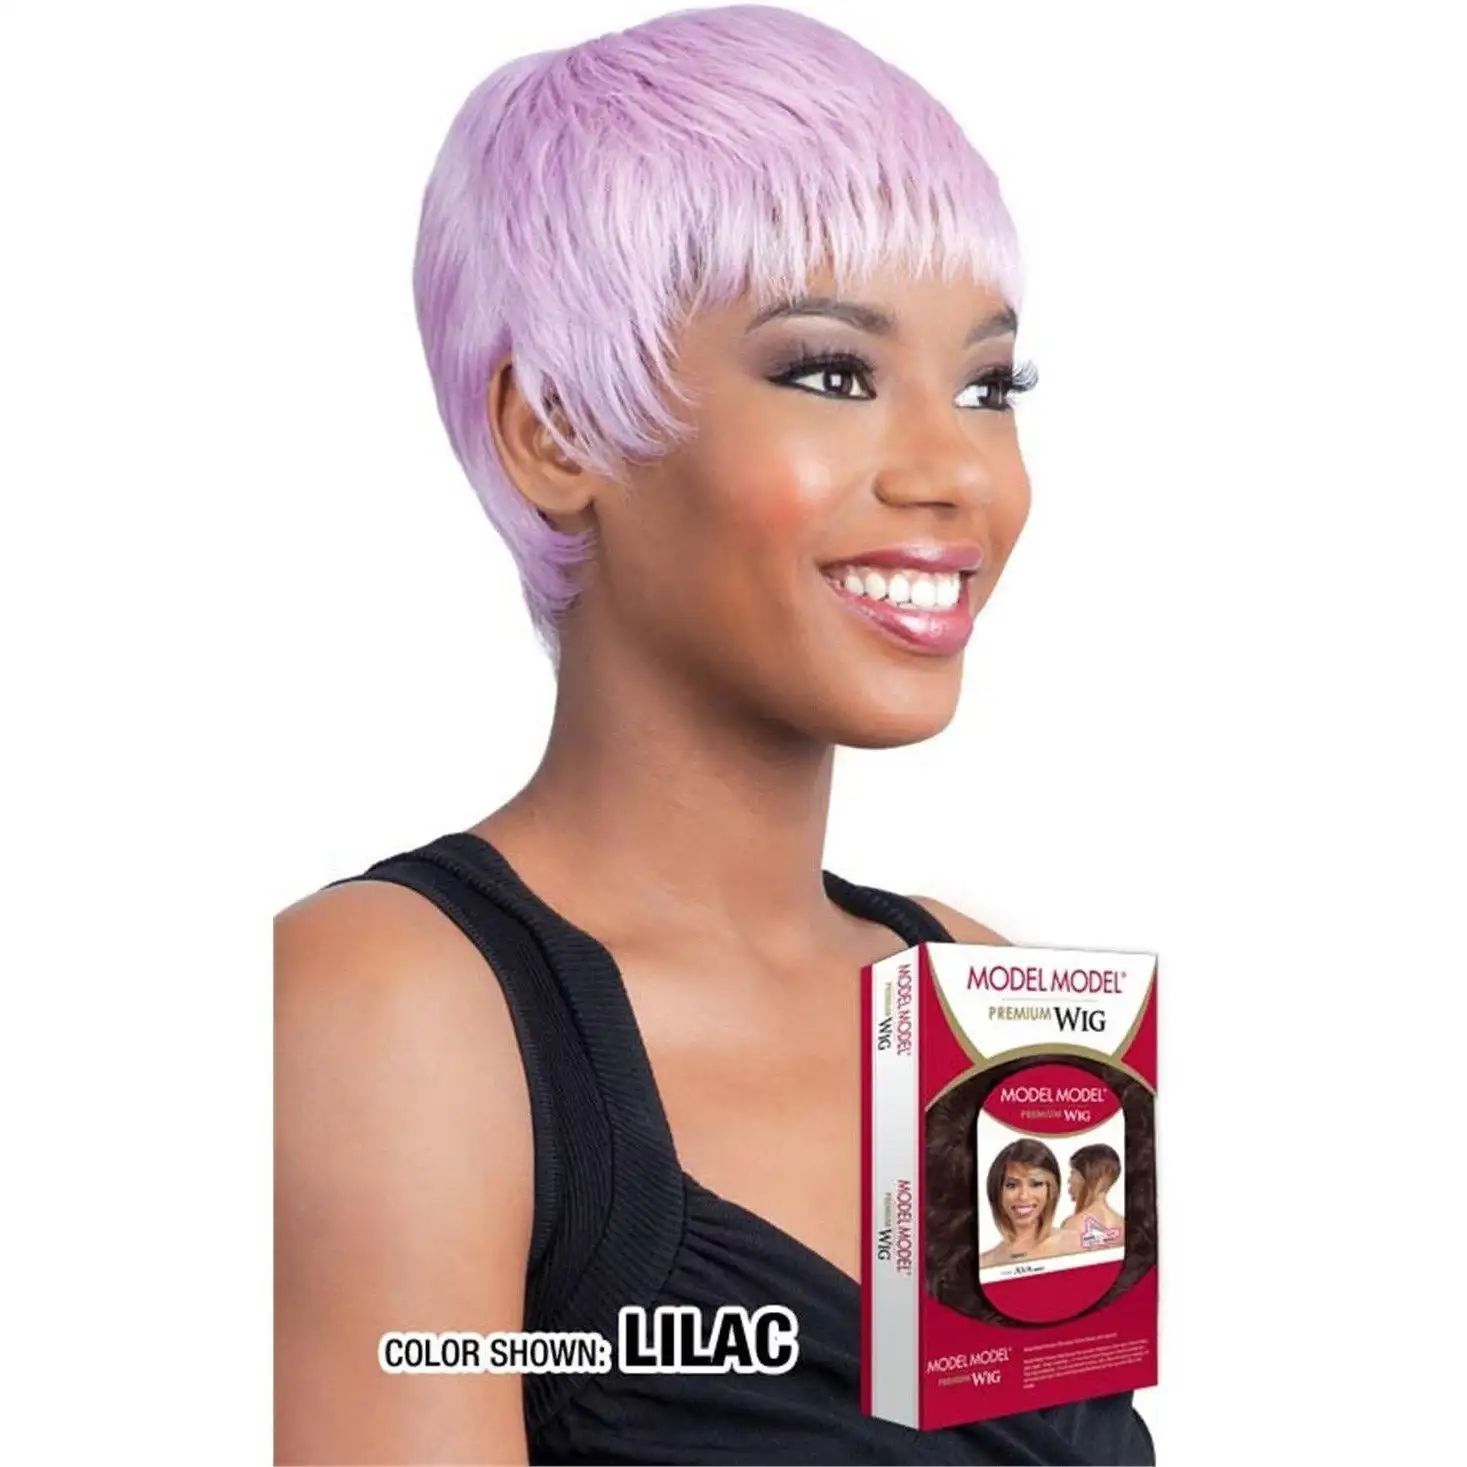 Model model premium wig harper_8376. DIAYTAR SENEGAL - Votre Destination de Shopping Authentique au Sénégal. Plongez dans notre boutique en ligne pour découvrir des produits qui célèbrent la riche culture et l'artisanat du pays.